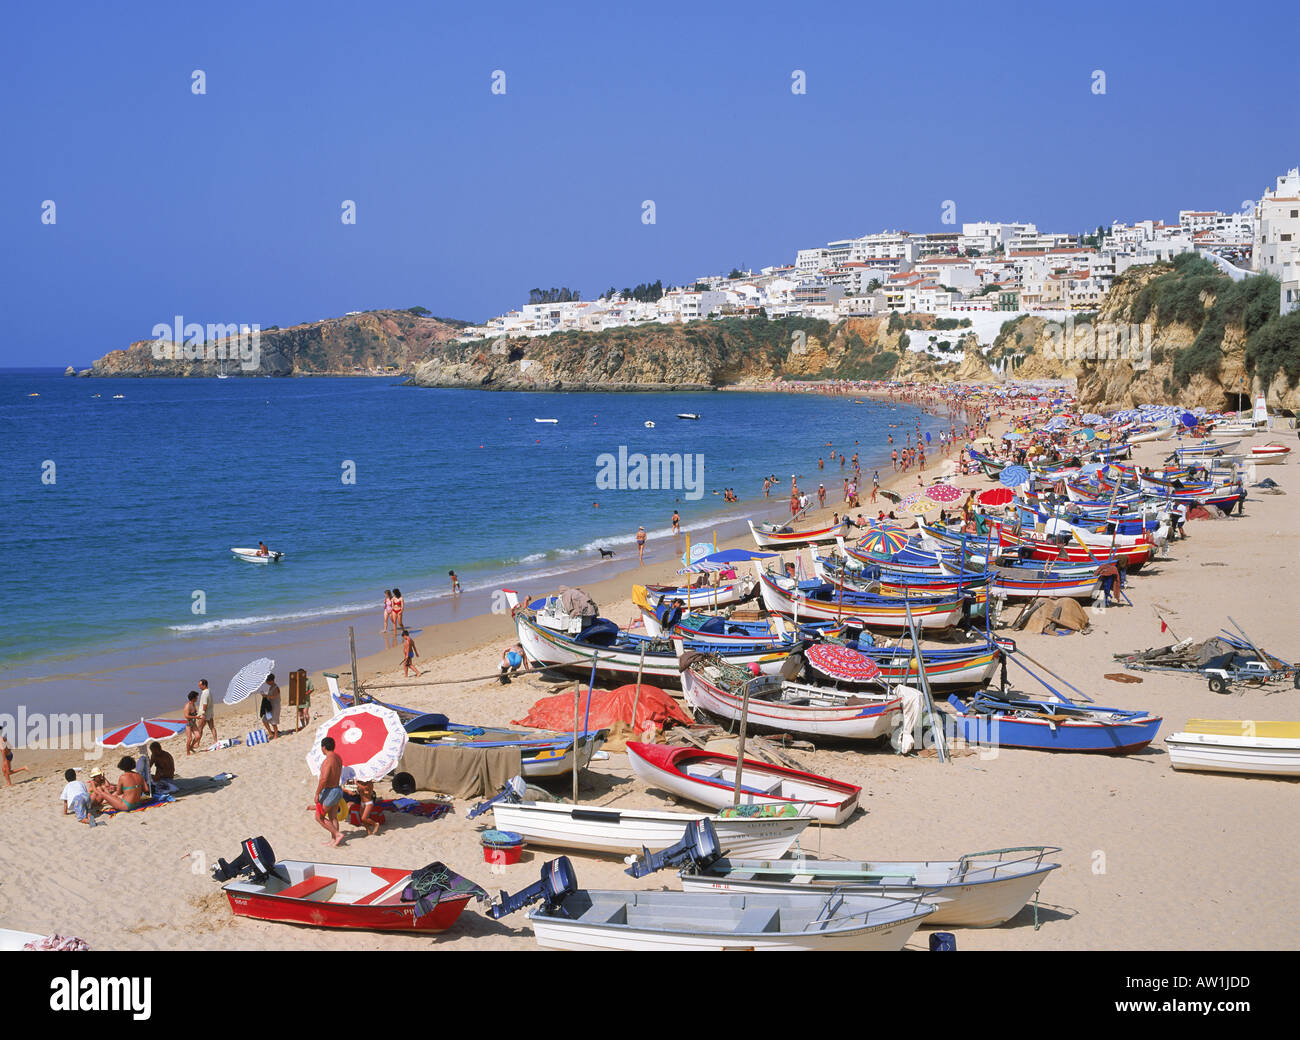 Bunte Fischerboote und Touristen am Strand von Albufeira an der Algarve, Portugal Stockfoto